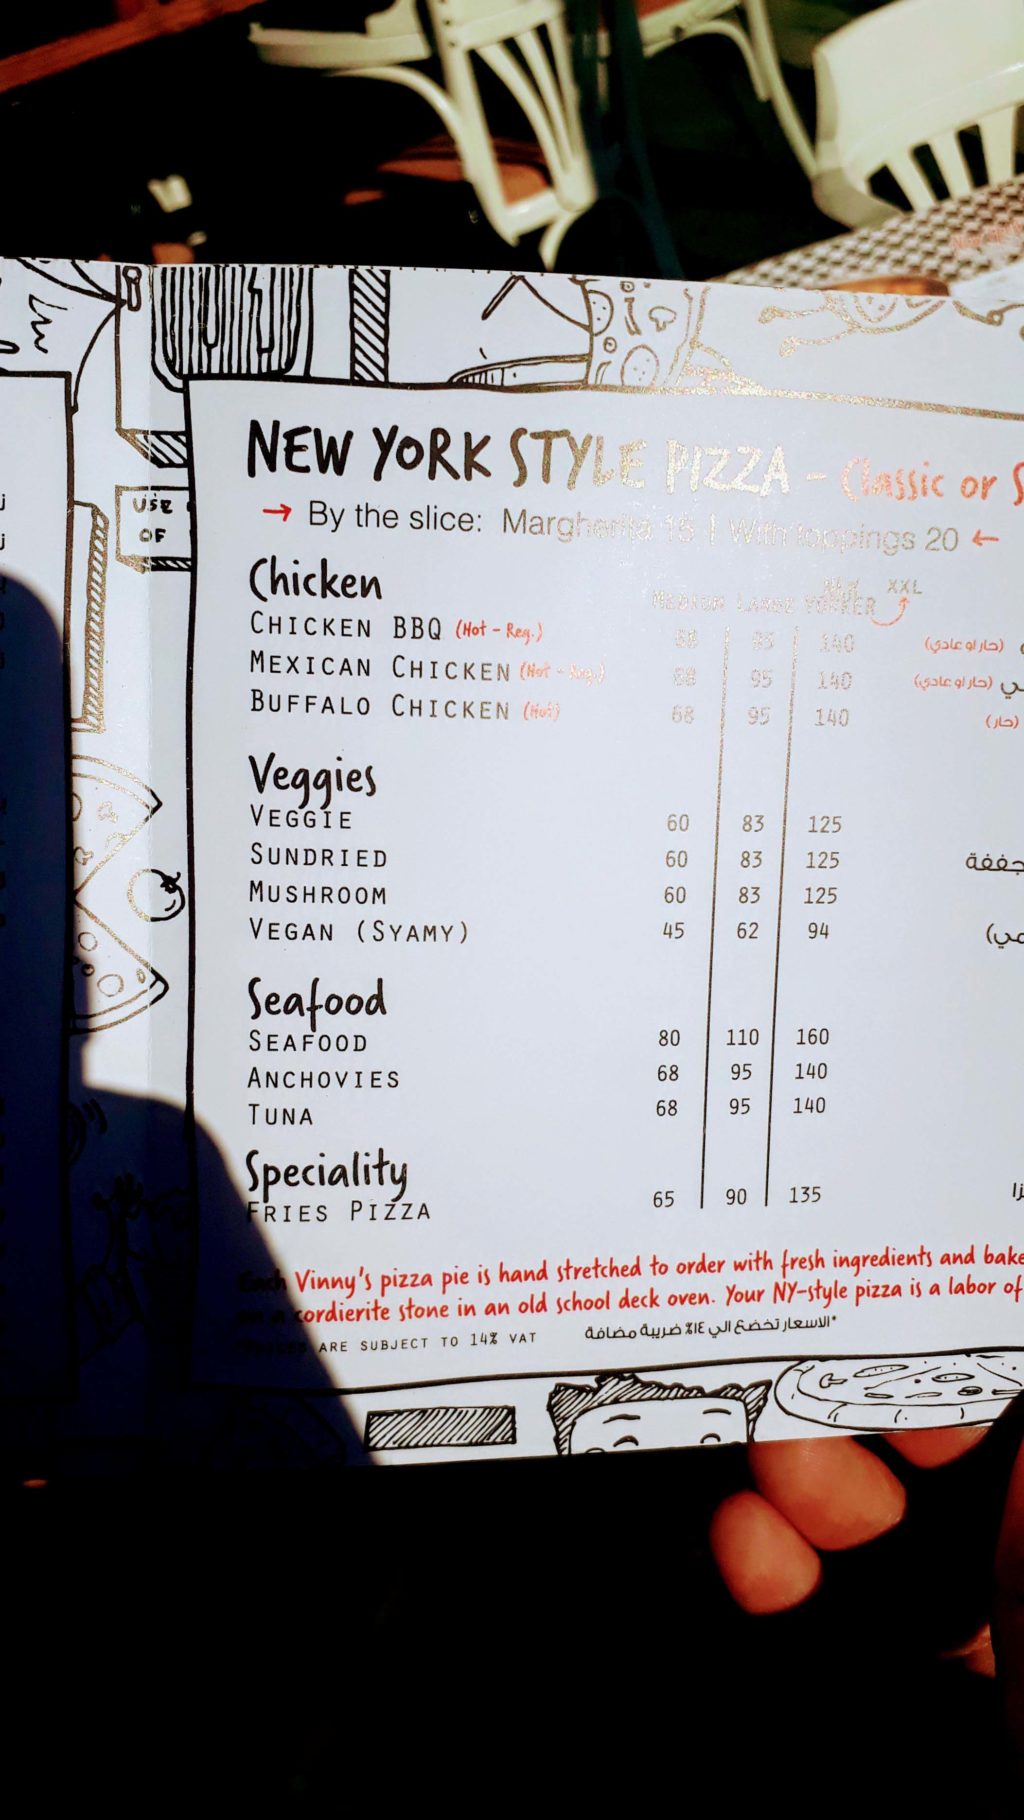 Vegane Pizza in der Karte auch als "syamy" gekennzeichnet